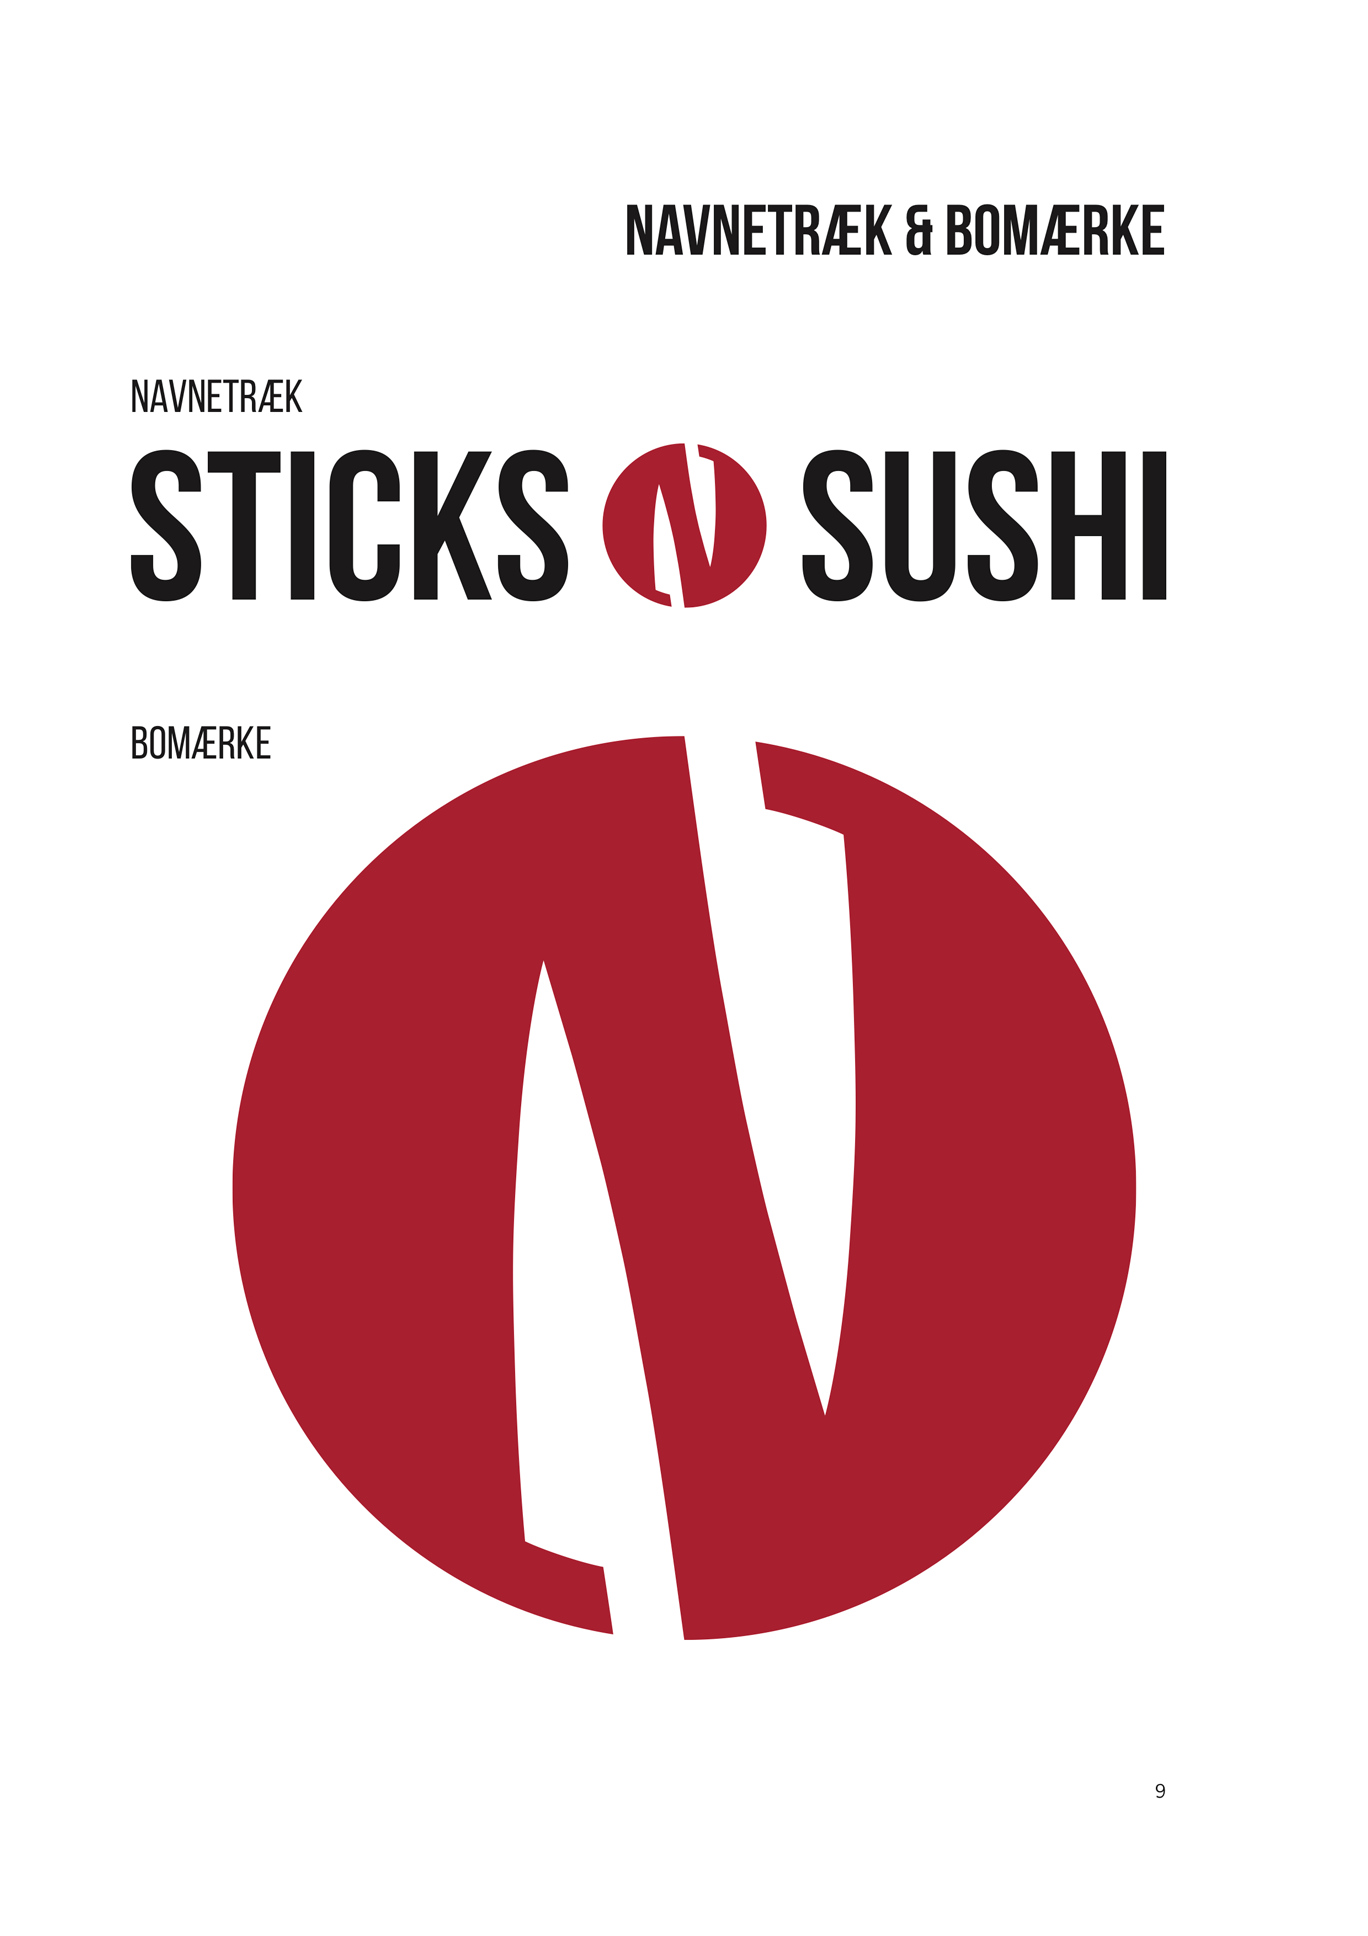 sticks-n-sushi-logo